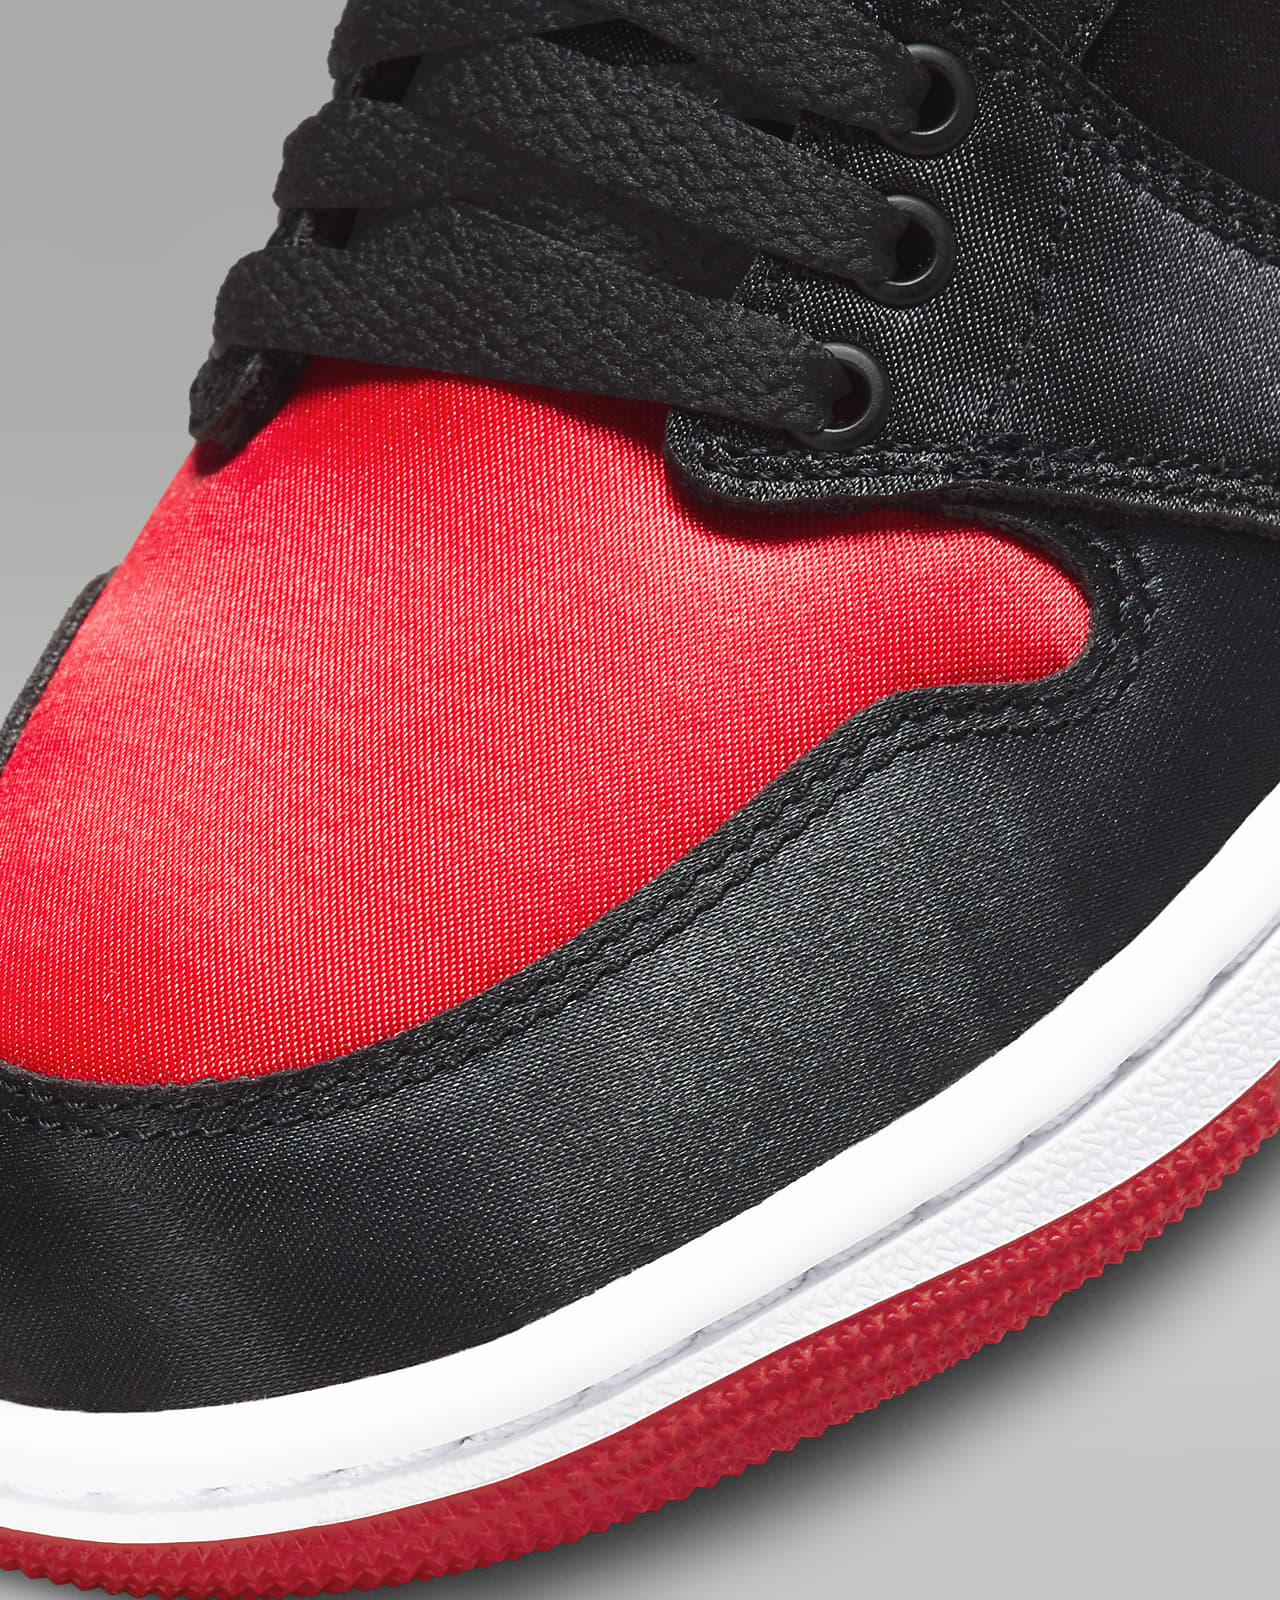 Air Jordan 1 Retro High OG 'Satin Bred' Women's Shoes